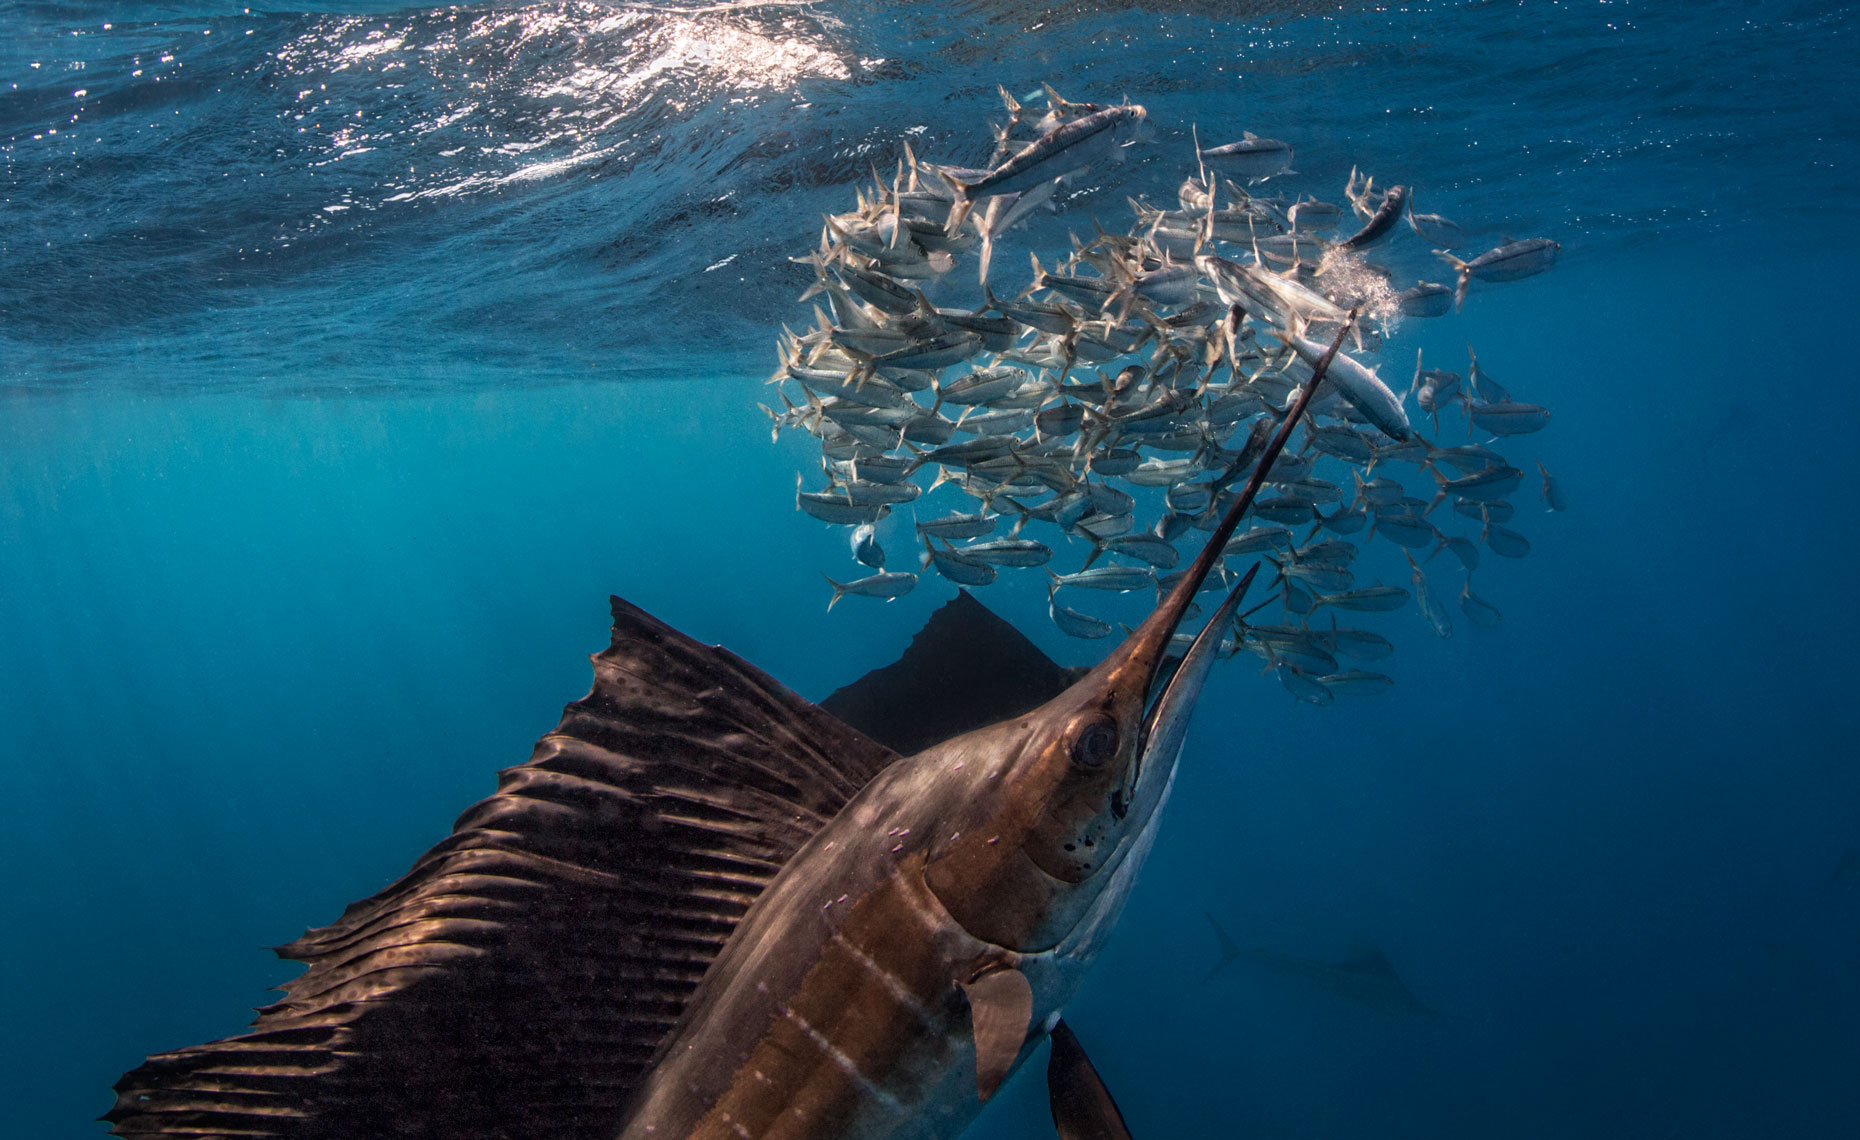 Ikan Marlin, ikan tercepat dunia yang memiliki moncong tombak dan berasal dari Indonesia adalah predator aktif